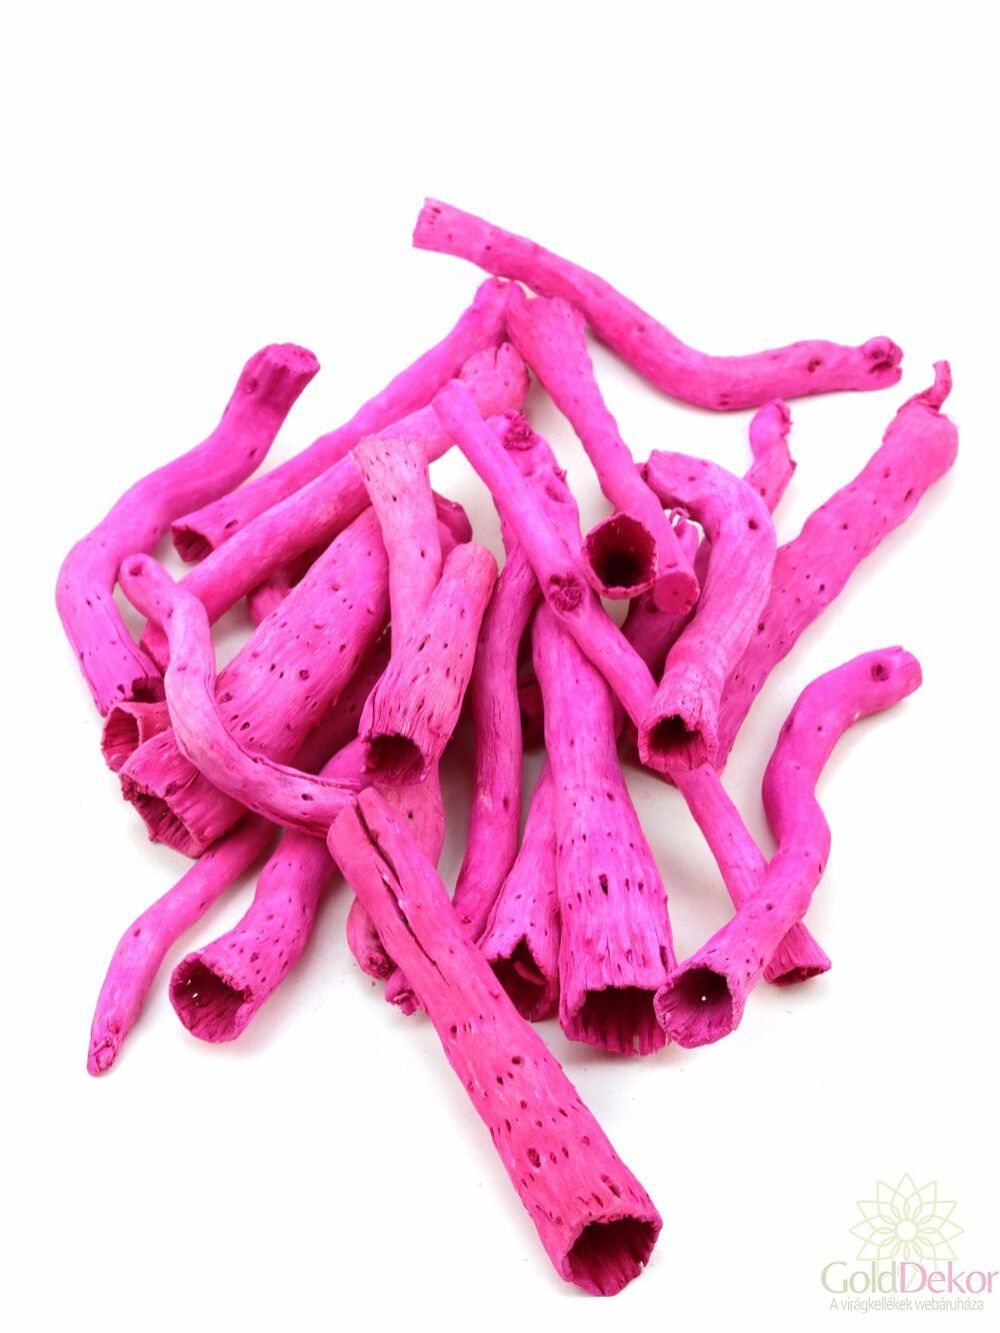 Cauli cone - Pink